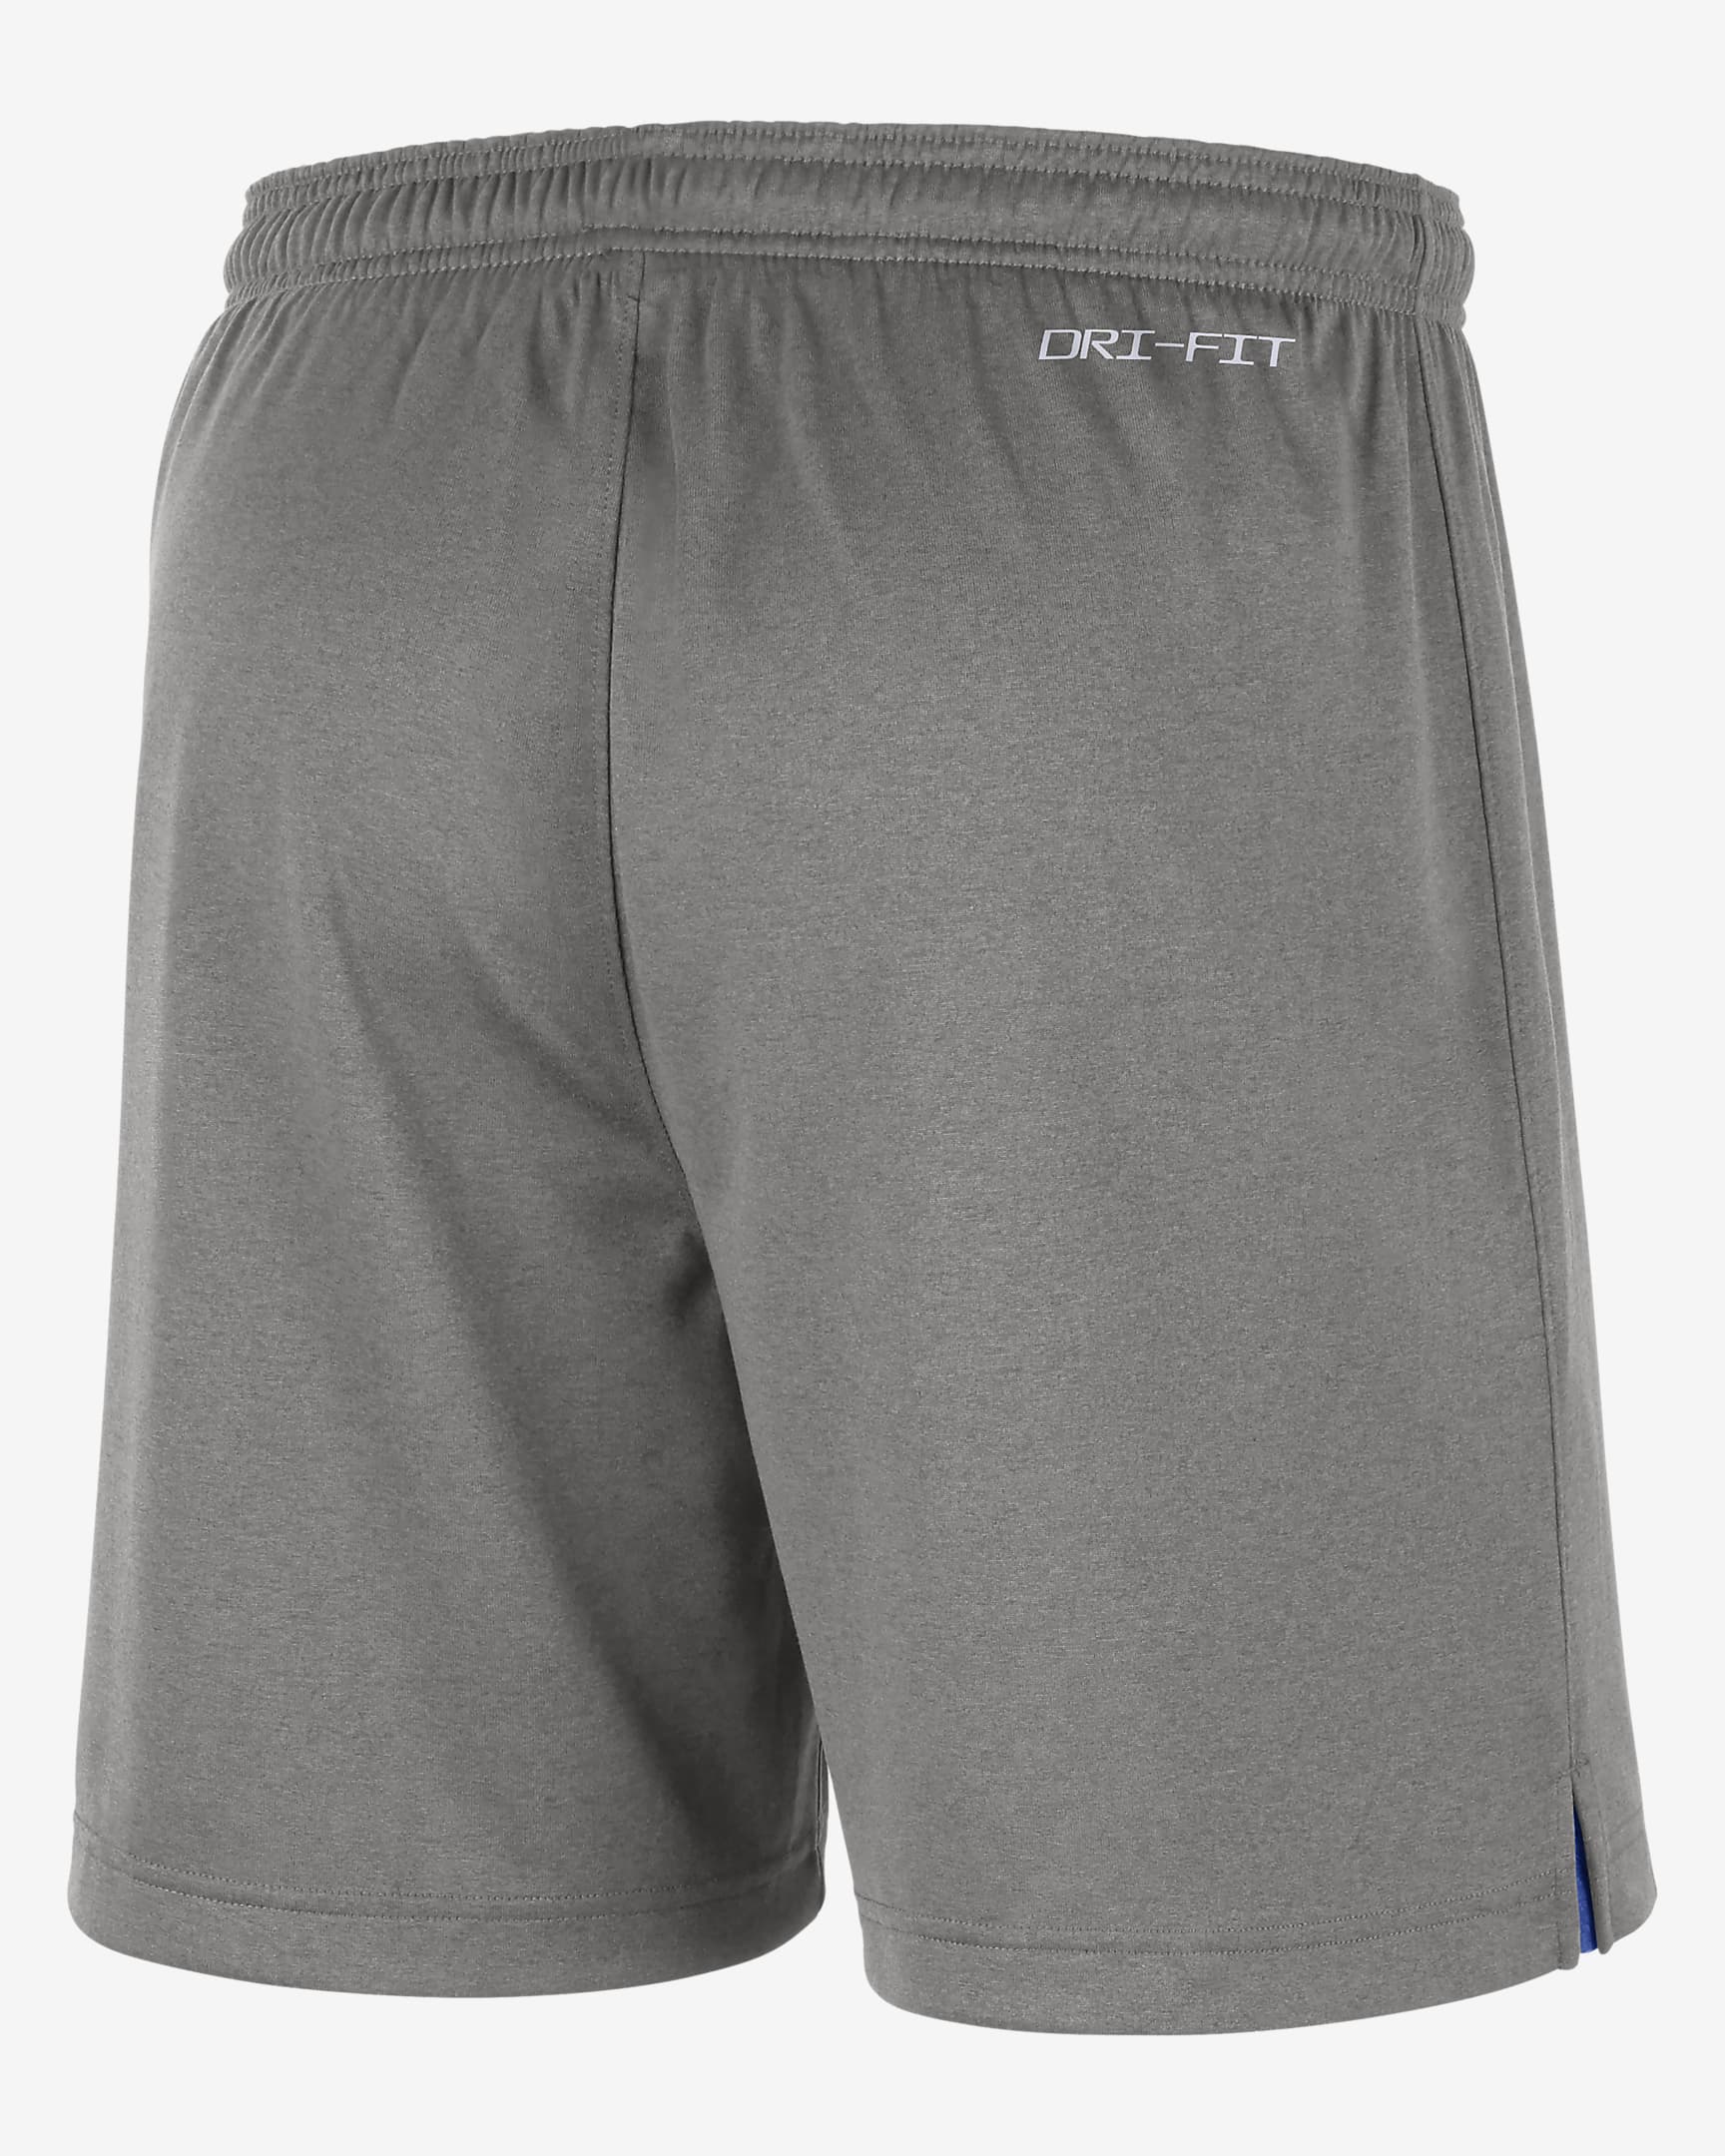 Nike College Dri-FIT (Duke) Men's Reversible Shorts. Nike.com